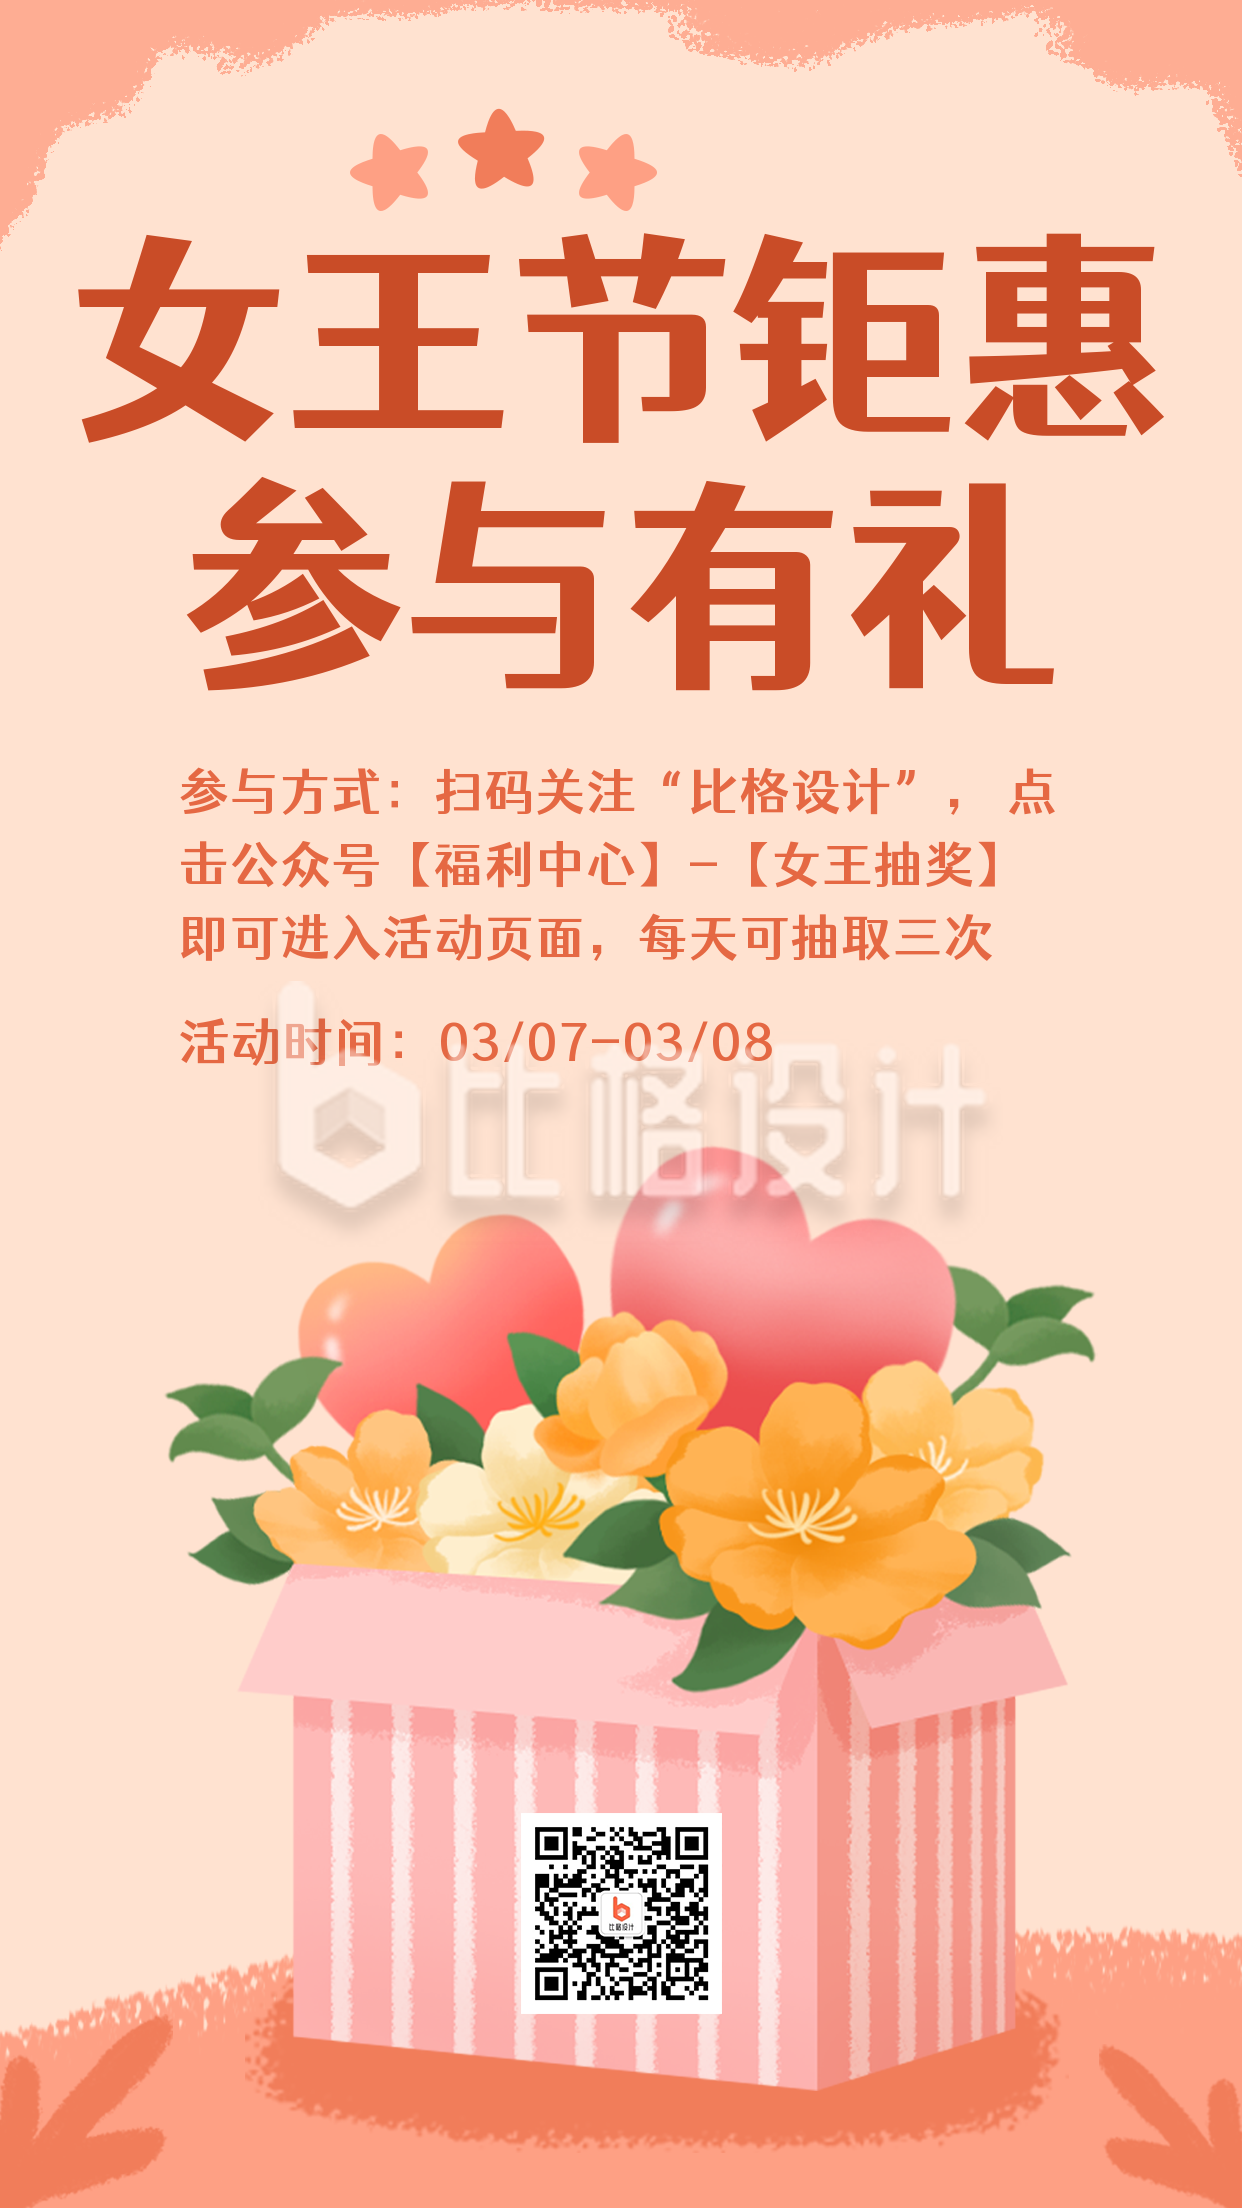 女神节妇女节礼包福利促销卡通手绘手机海报